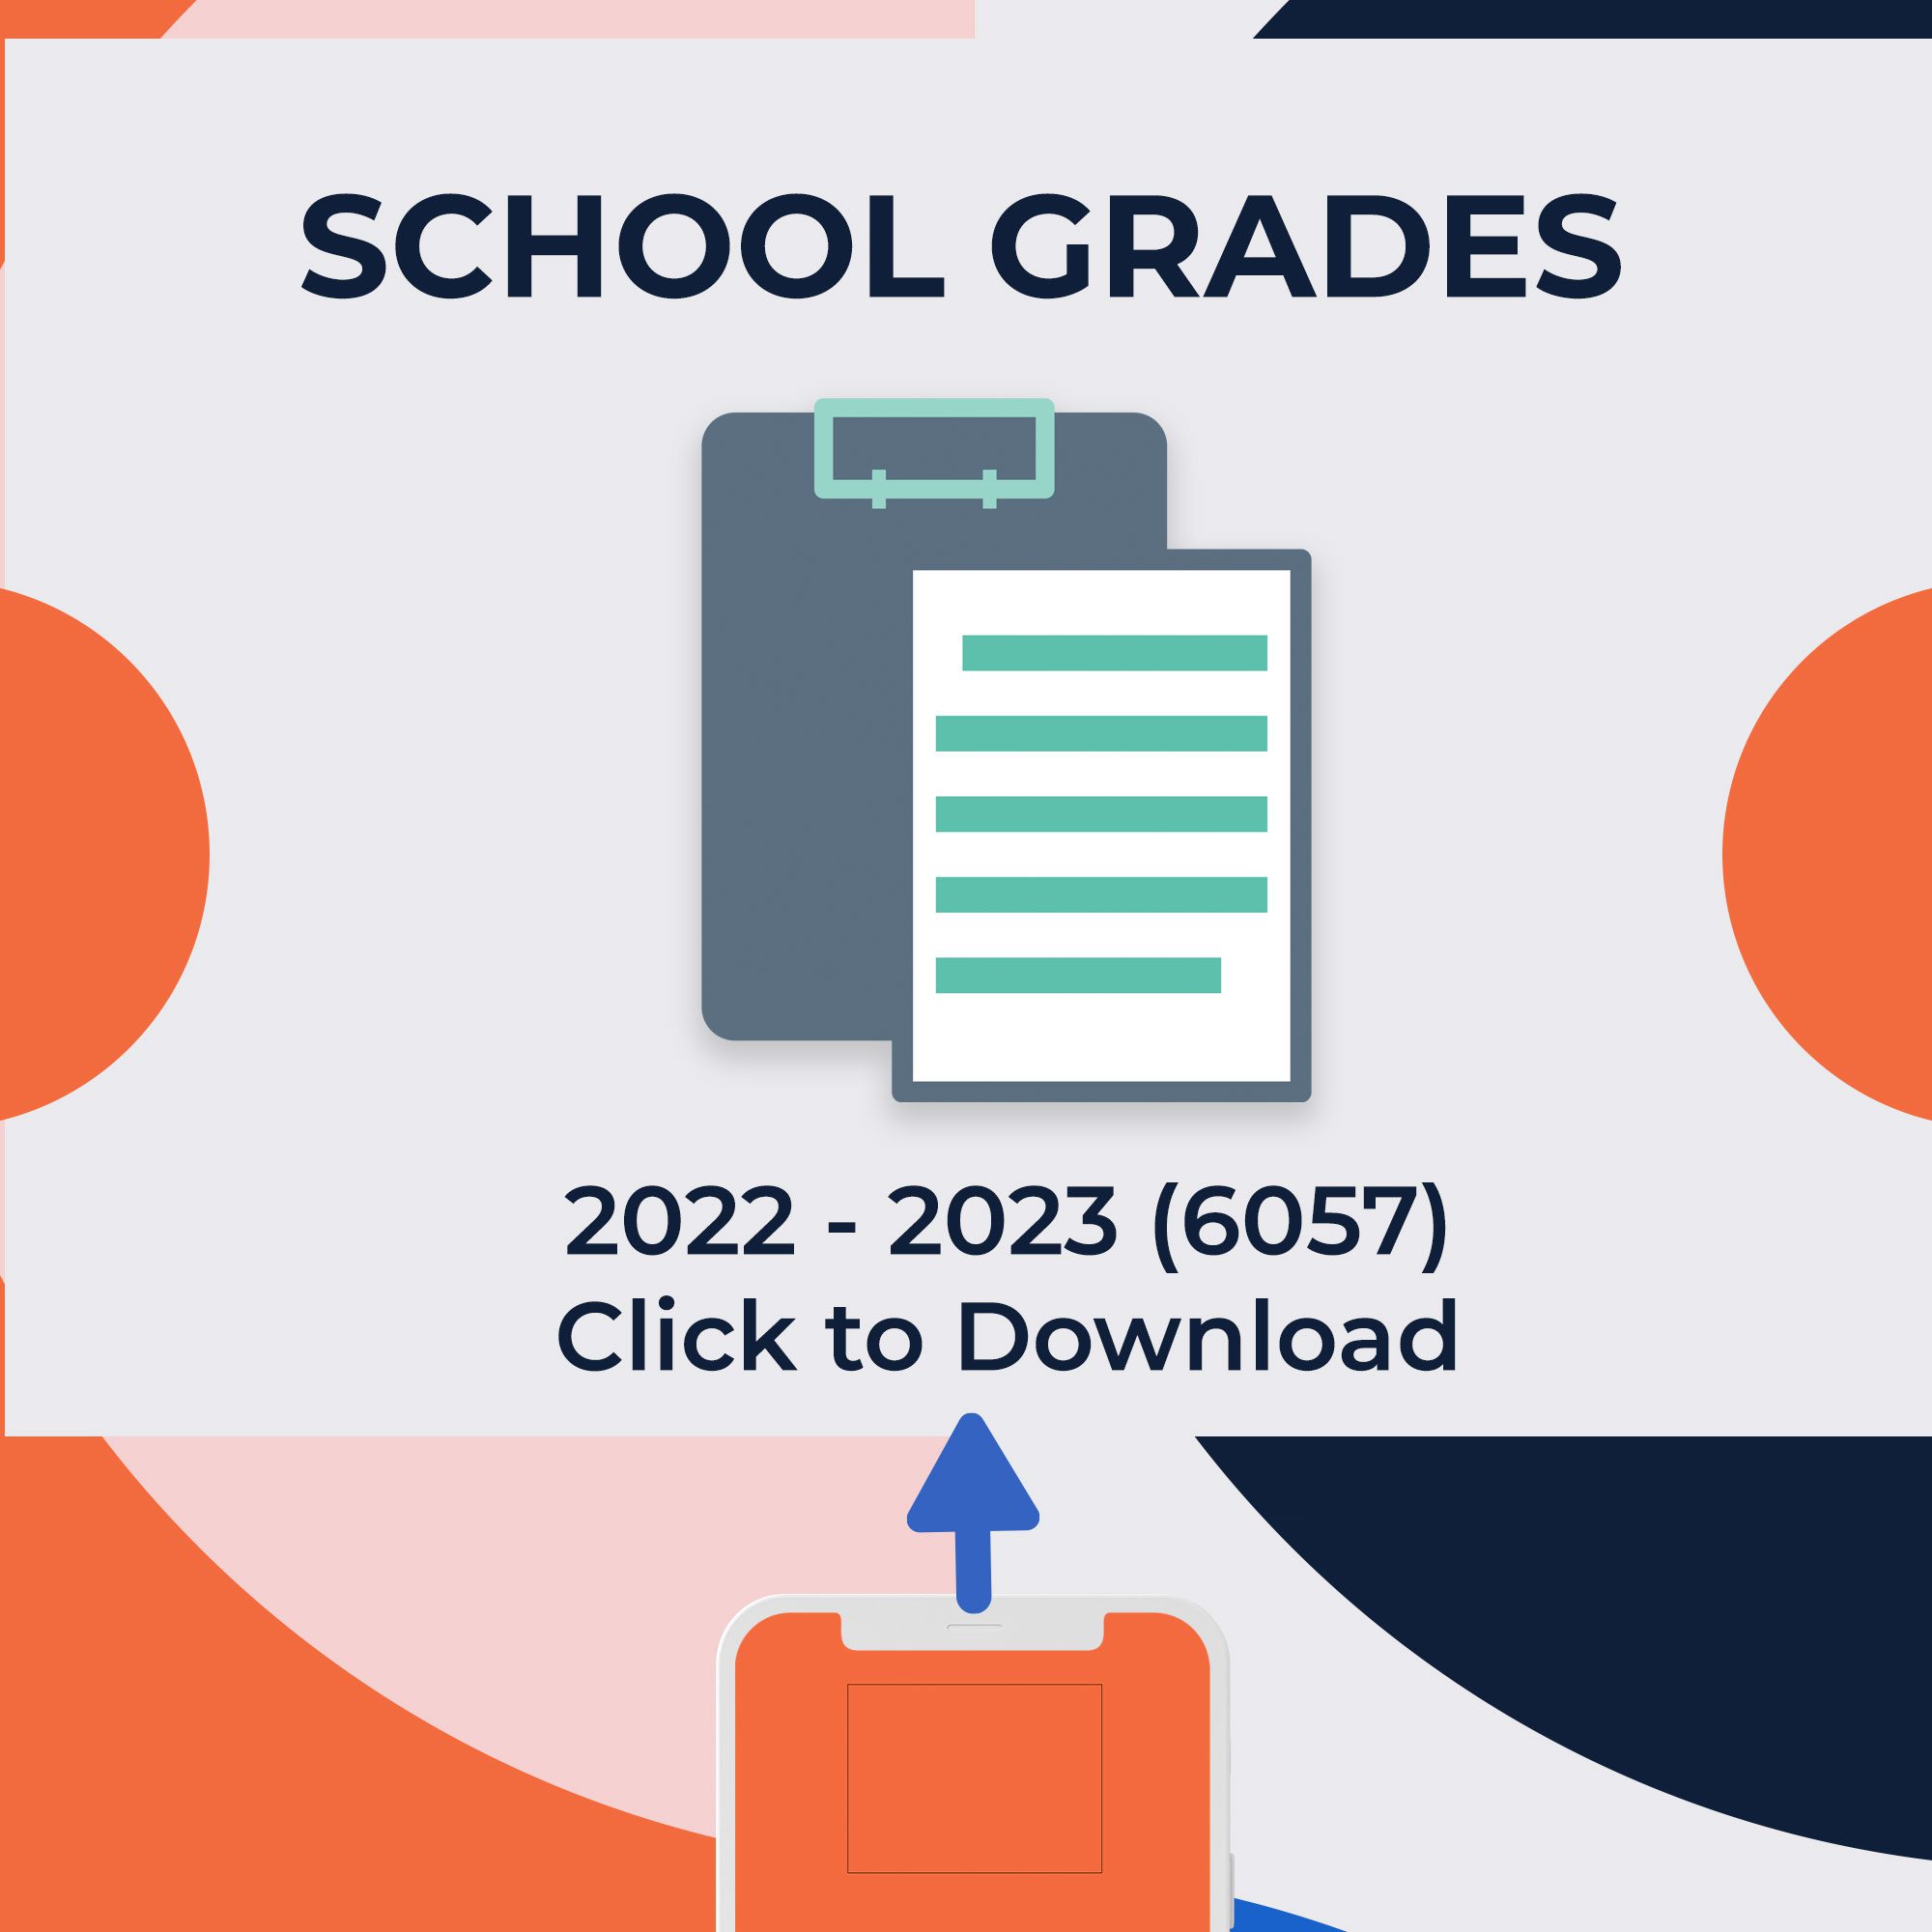 School Grades 2022 - 2023 / 6057